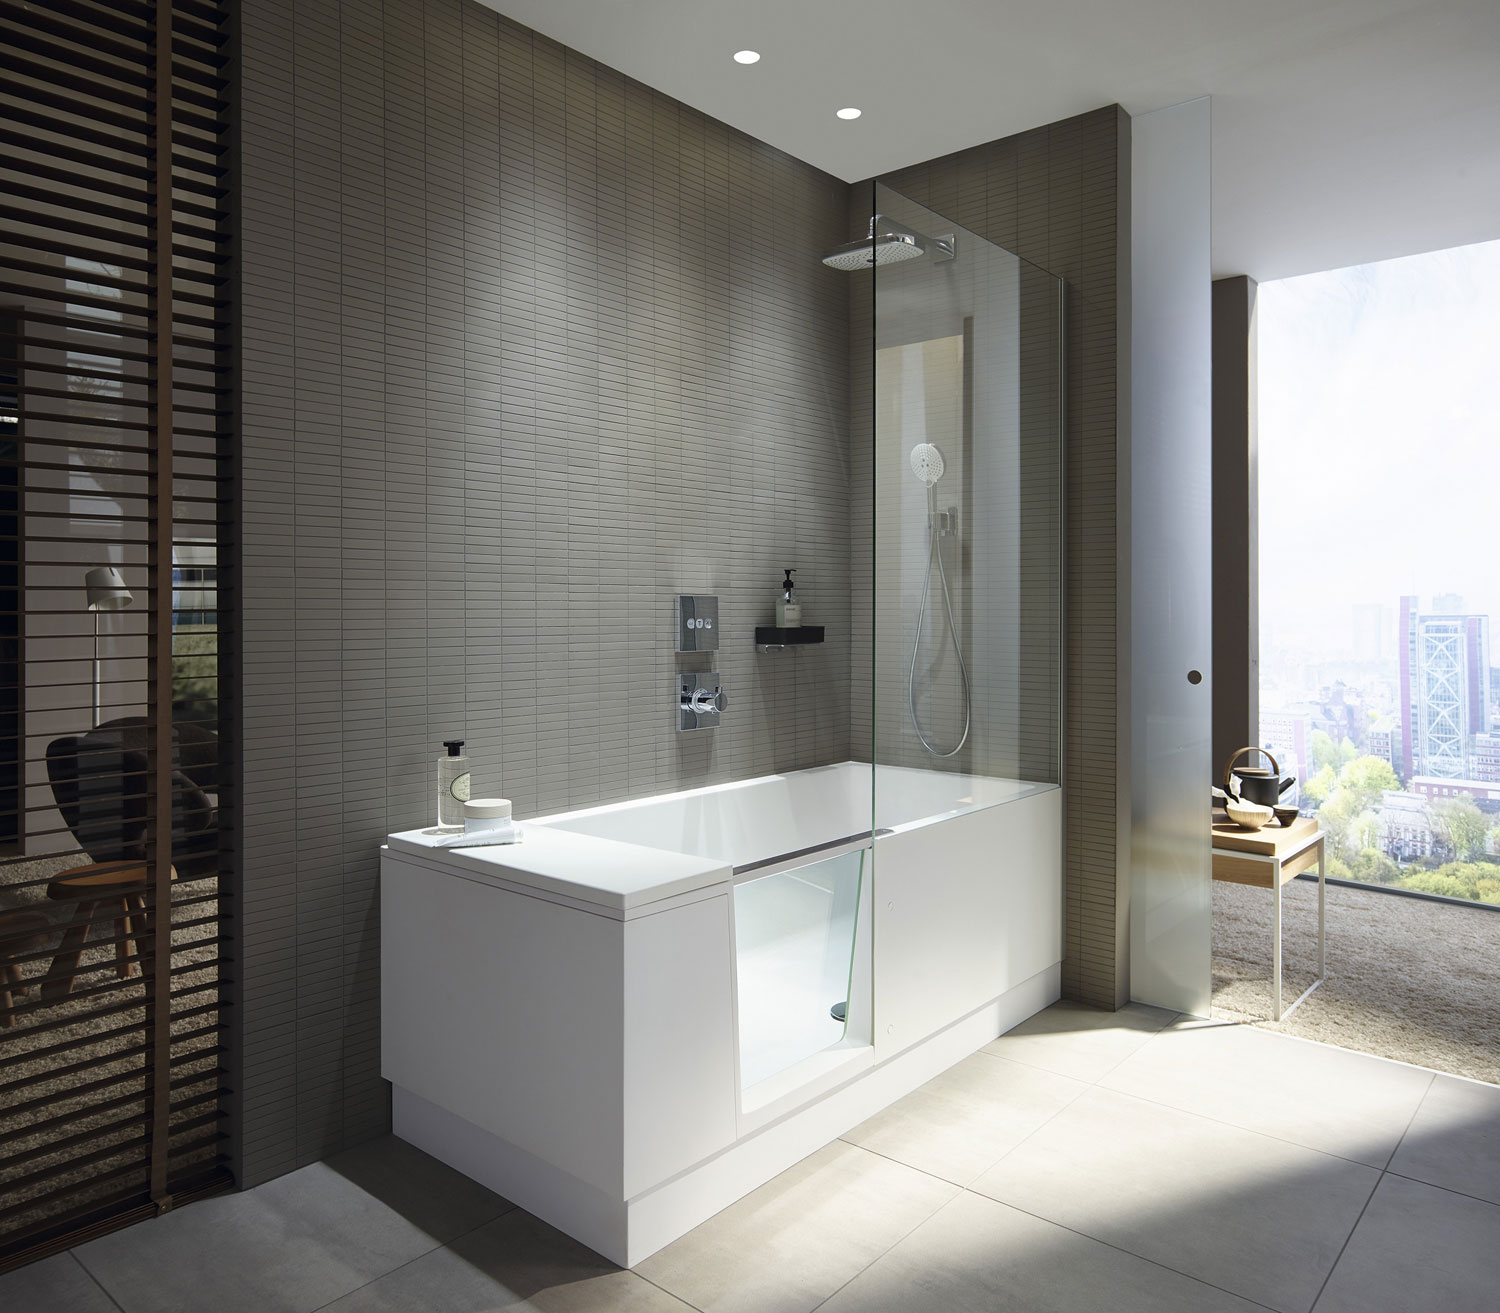 Shower Bath Ducha Y Banera Para Un Extraordinario Confort En Banos Pequenos Arquimaster